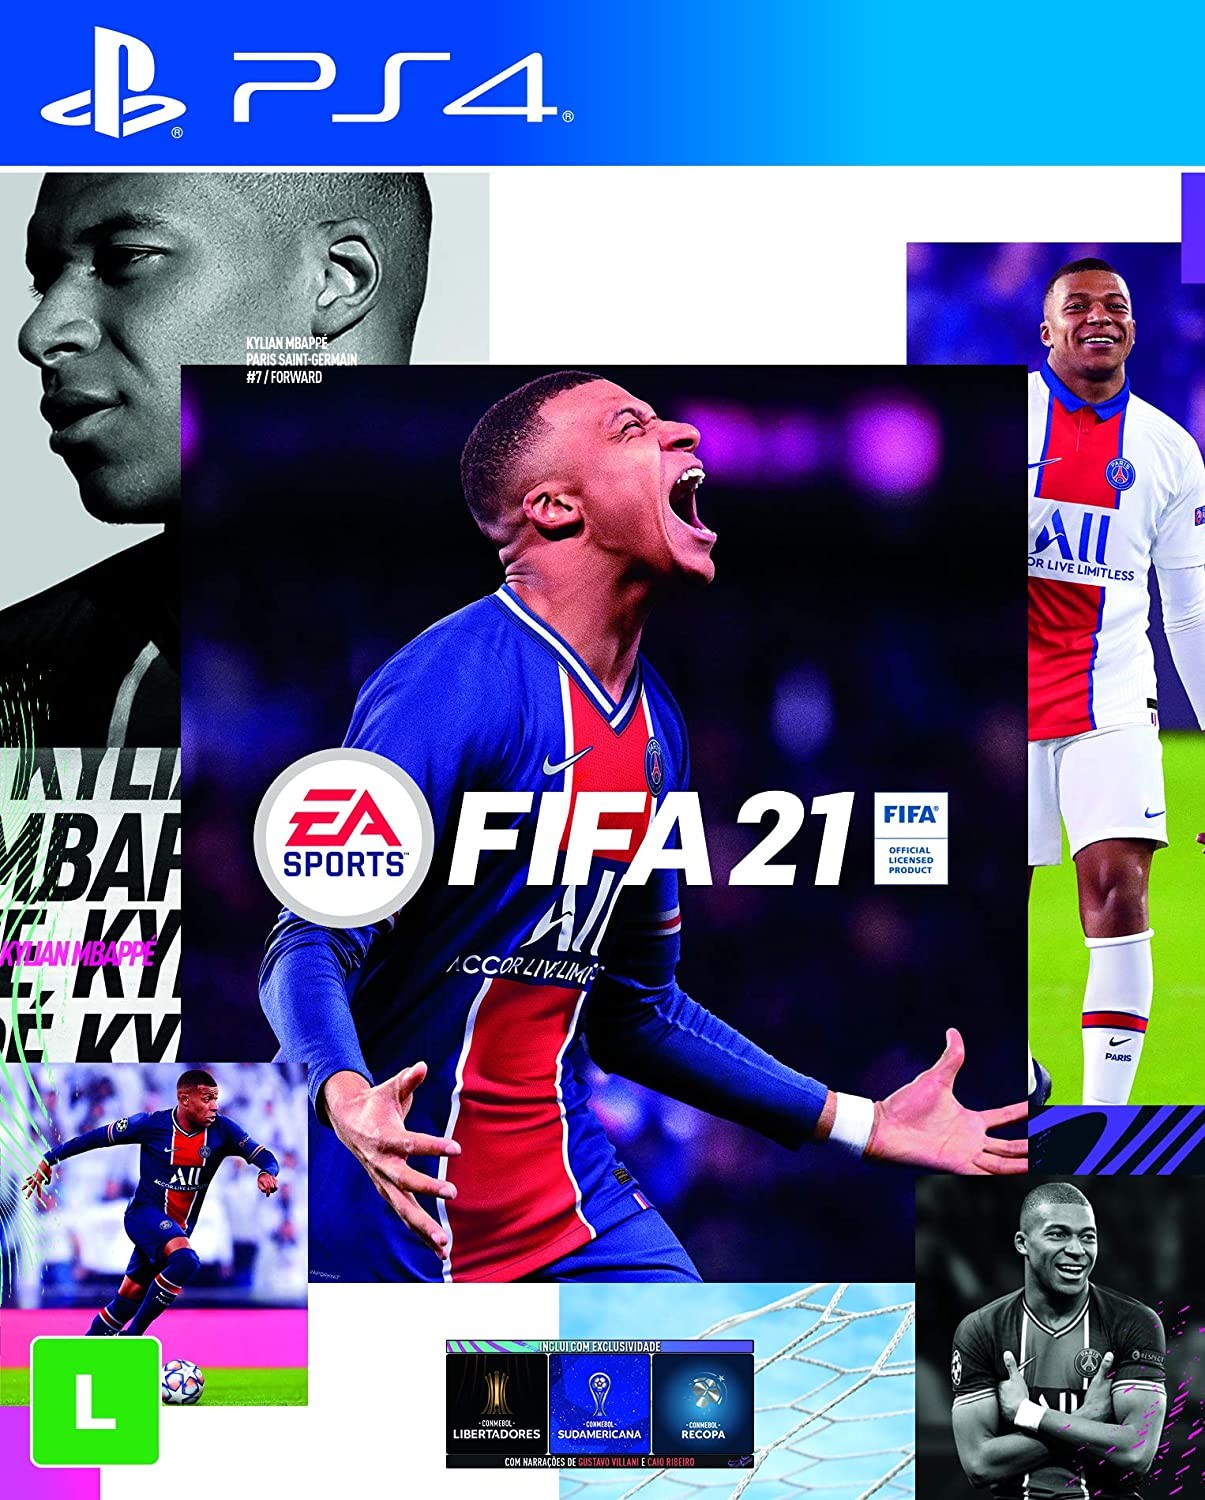 FIFA 21 - PlayStation 4, Sony, (R$ 169,90)* (Foto: Divulgação)